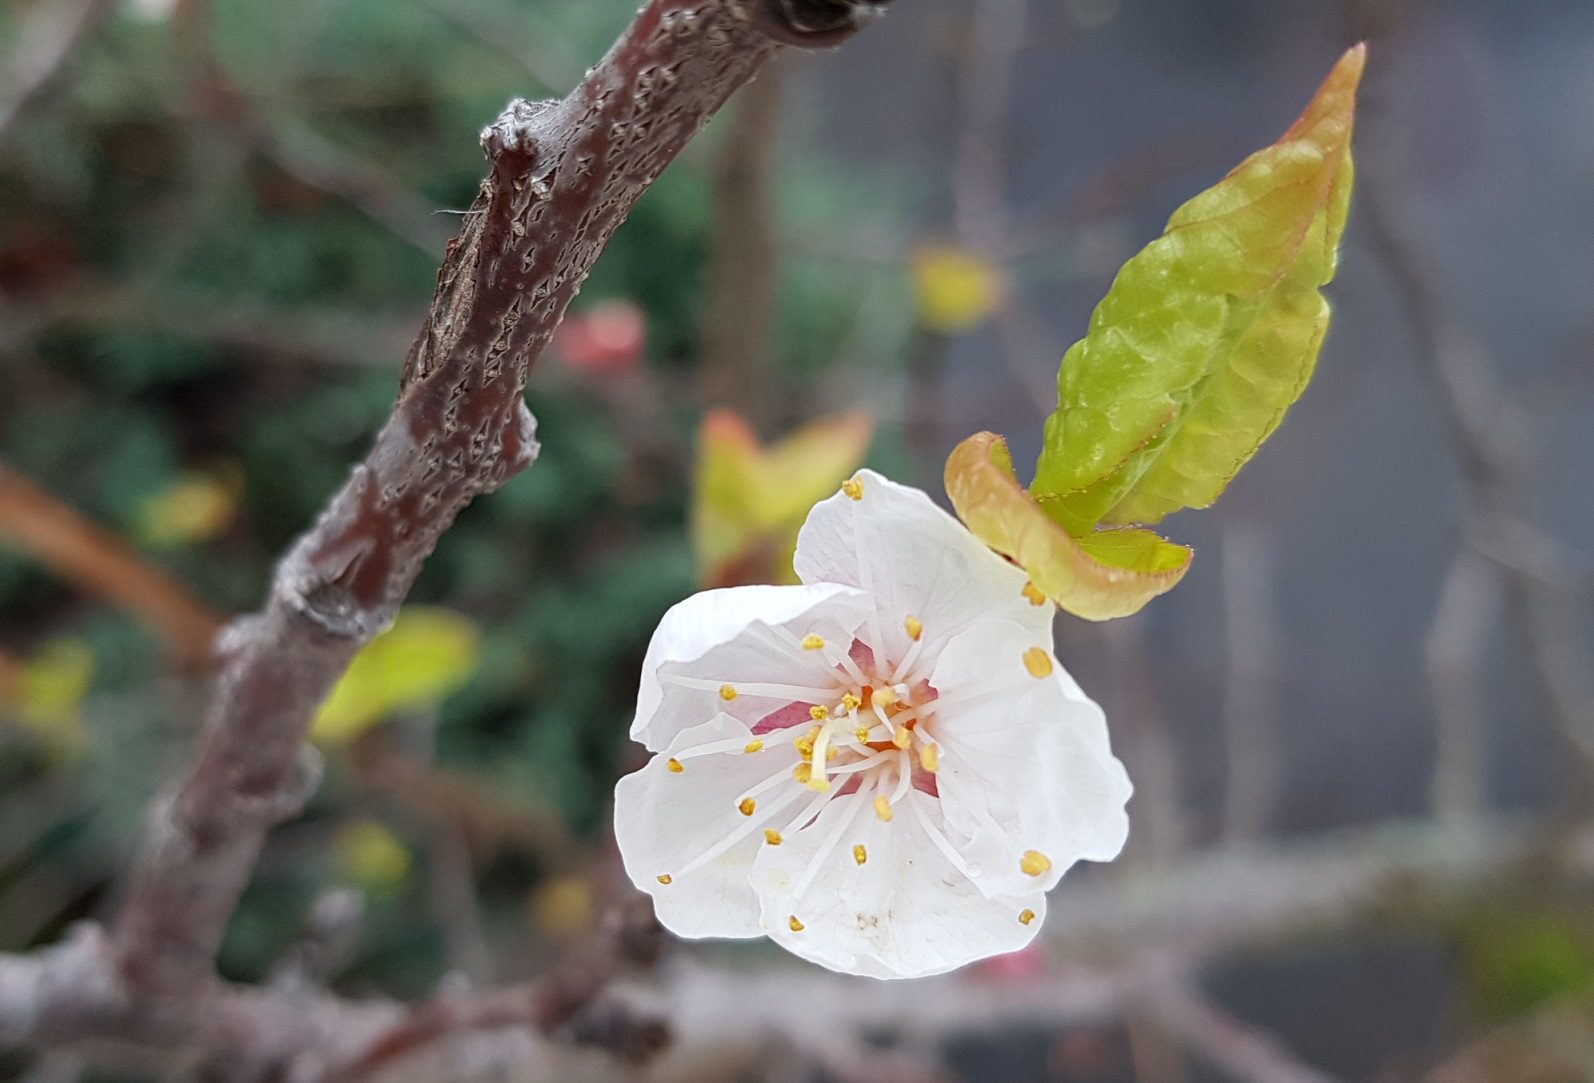 Viel zu frühe Aprikosenblüte an einem Spalier an der Hauswand. Aber nicht nur die Kälte, sondern auch die fehlende Bestäubung durch Insekten ergibt eine Nullnummer. (Foto: C. Hayoz)